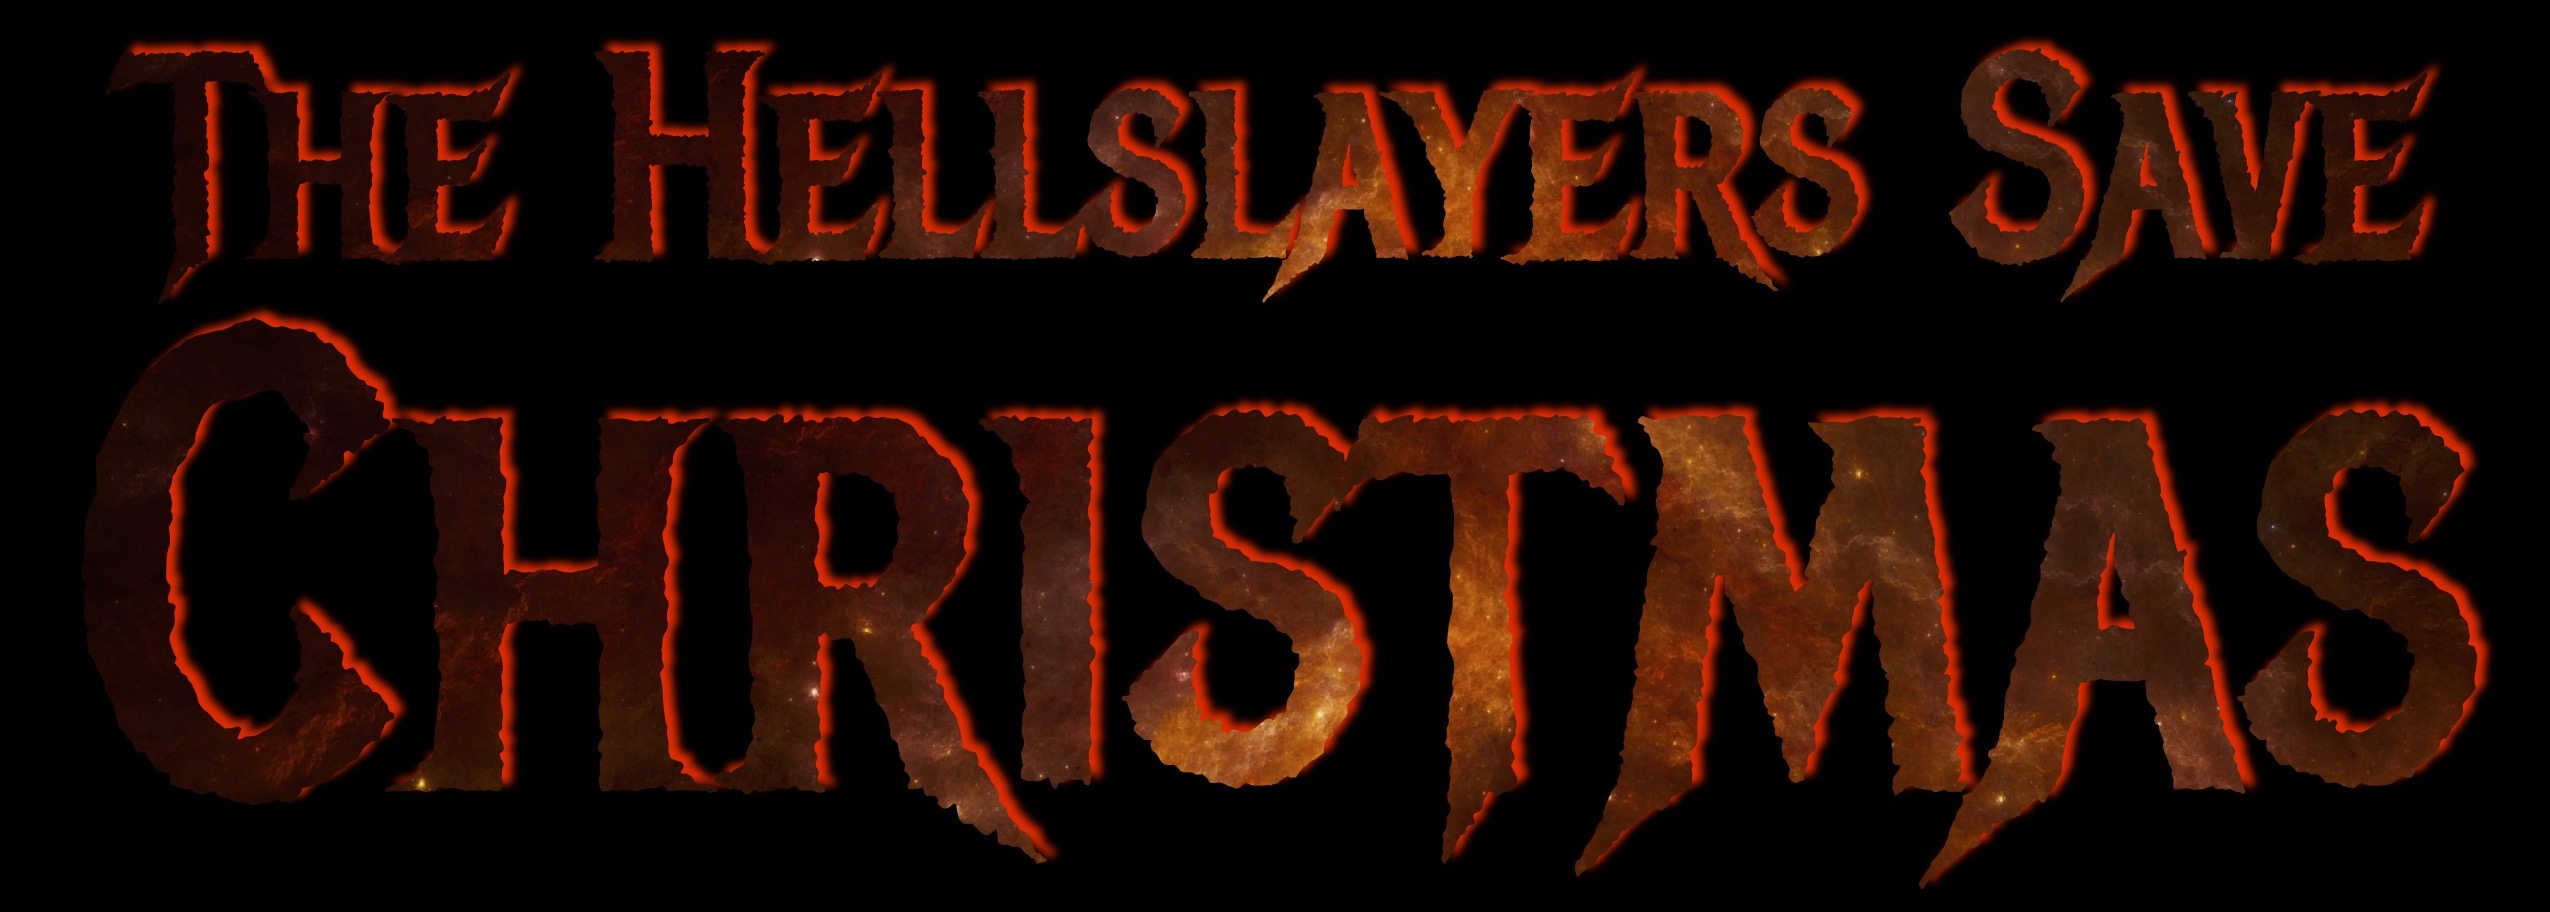 The Hellslayers Save Christmas